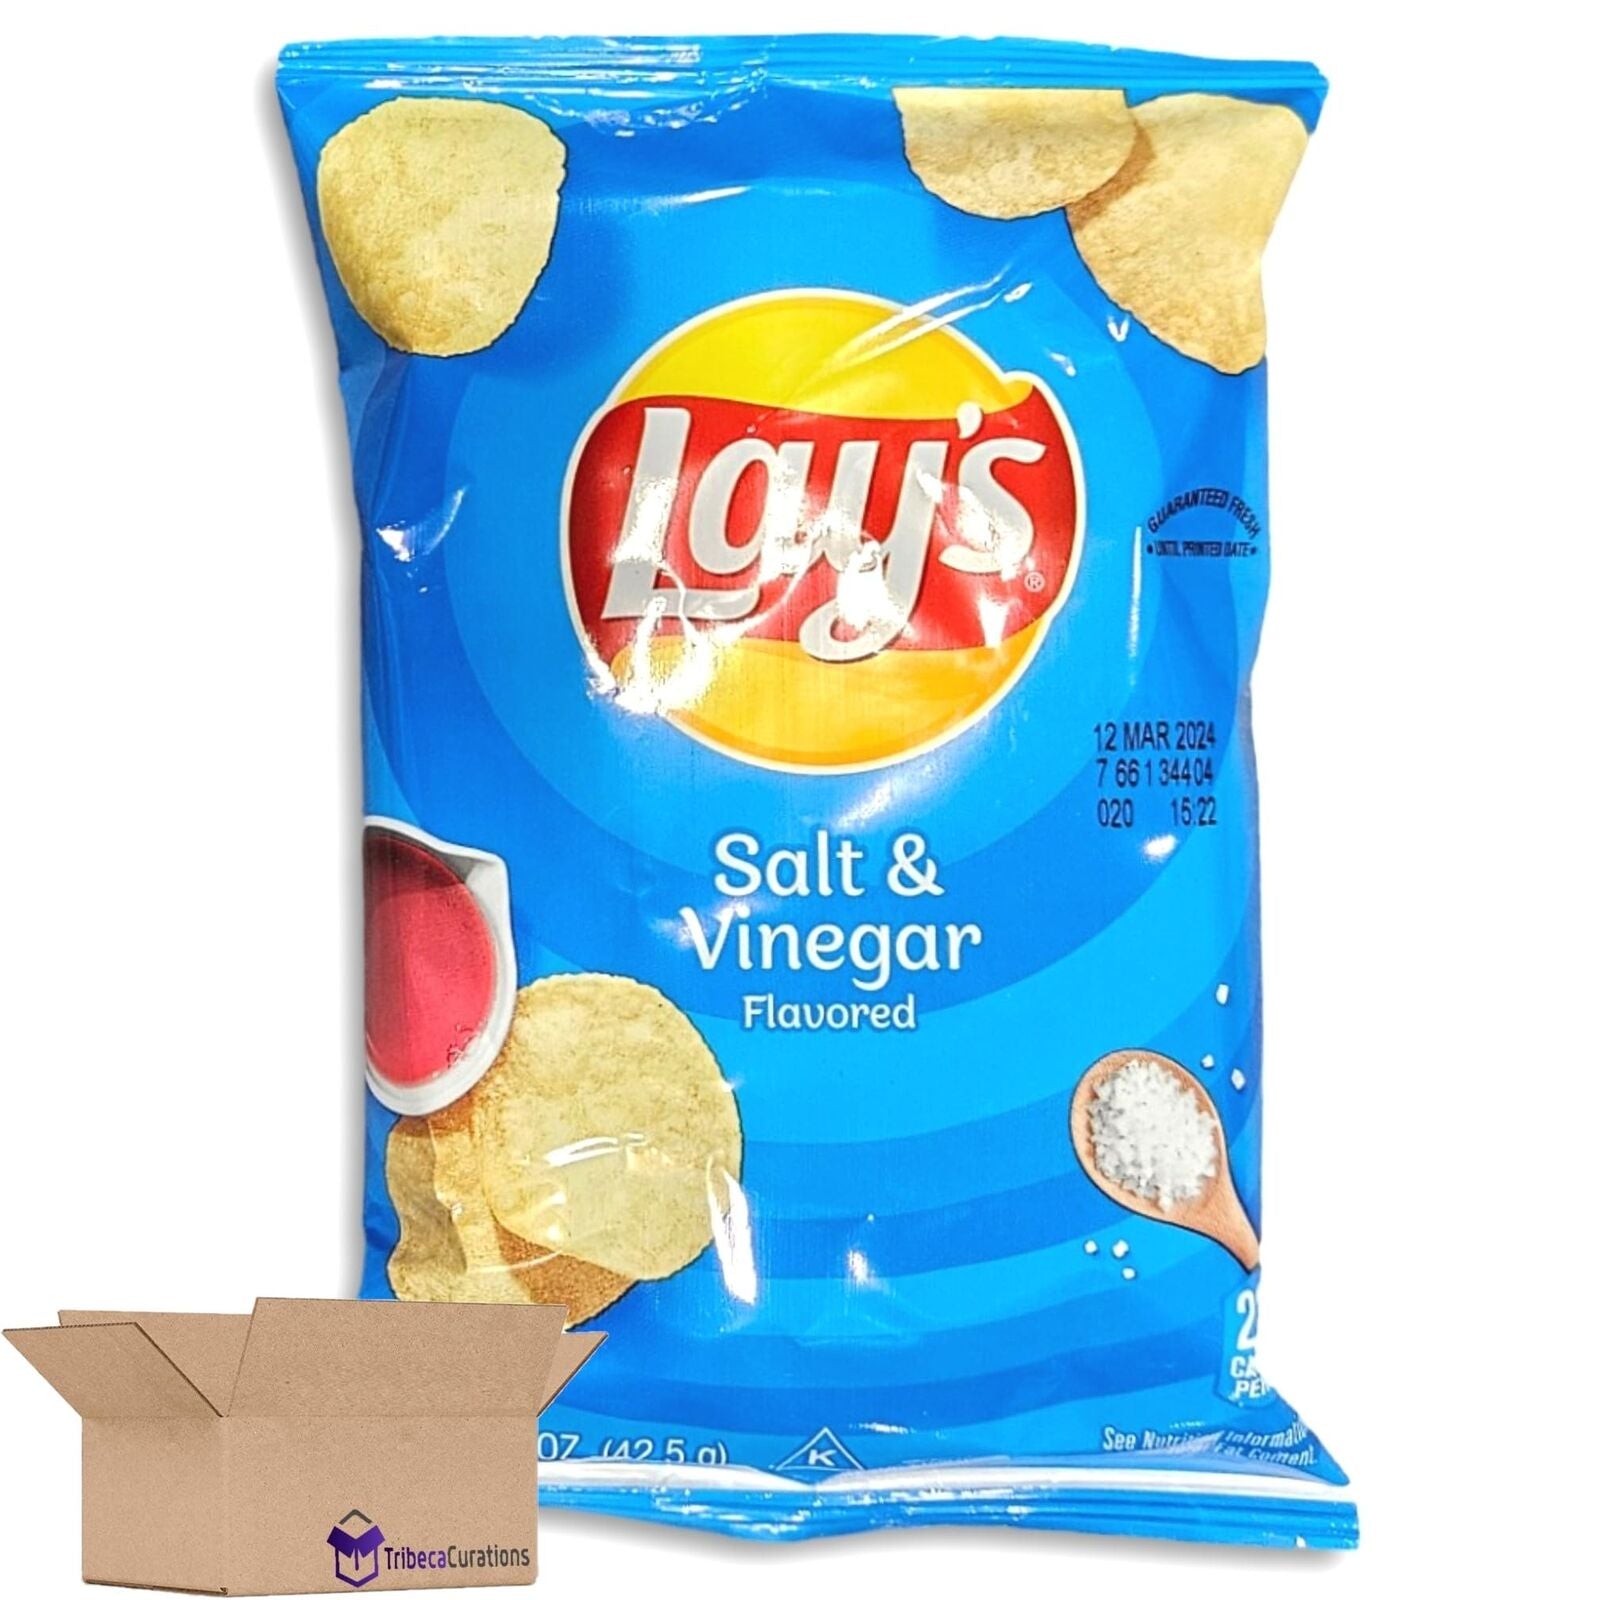 Salt & Vinegar Potato Chips Value Pack | Bundled by Tribeca Curations, 1.5